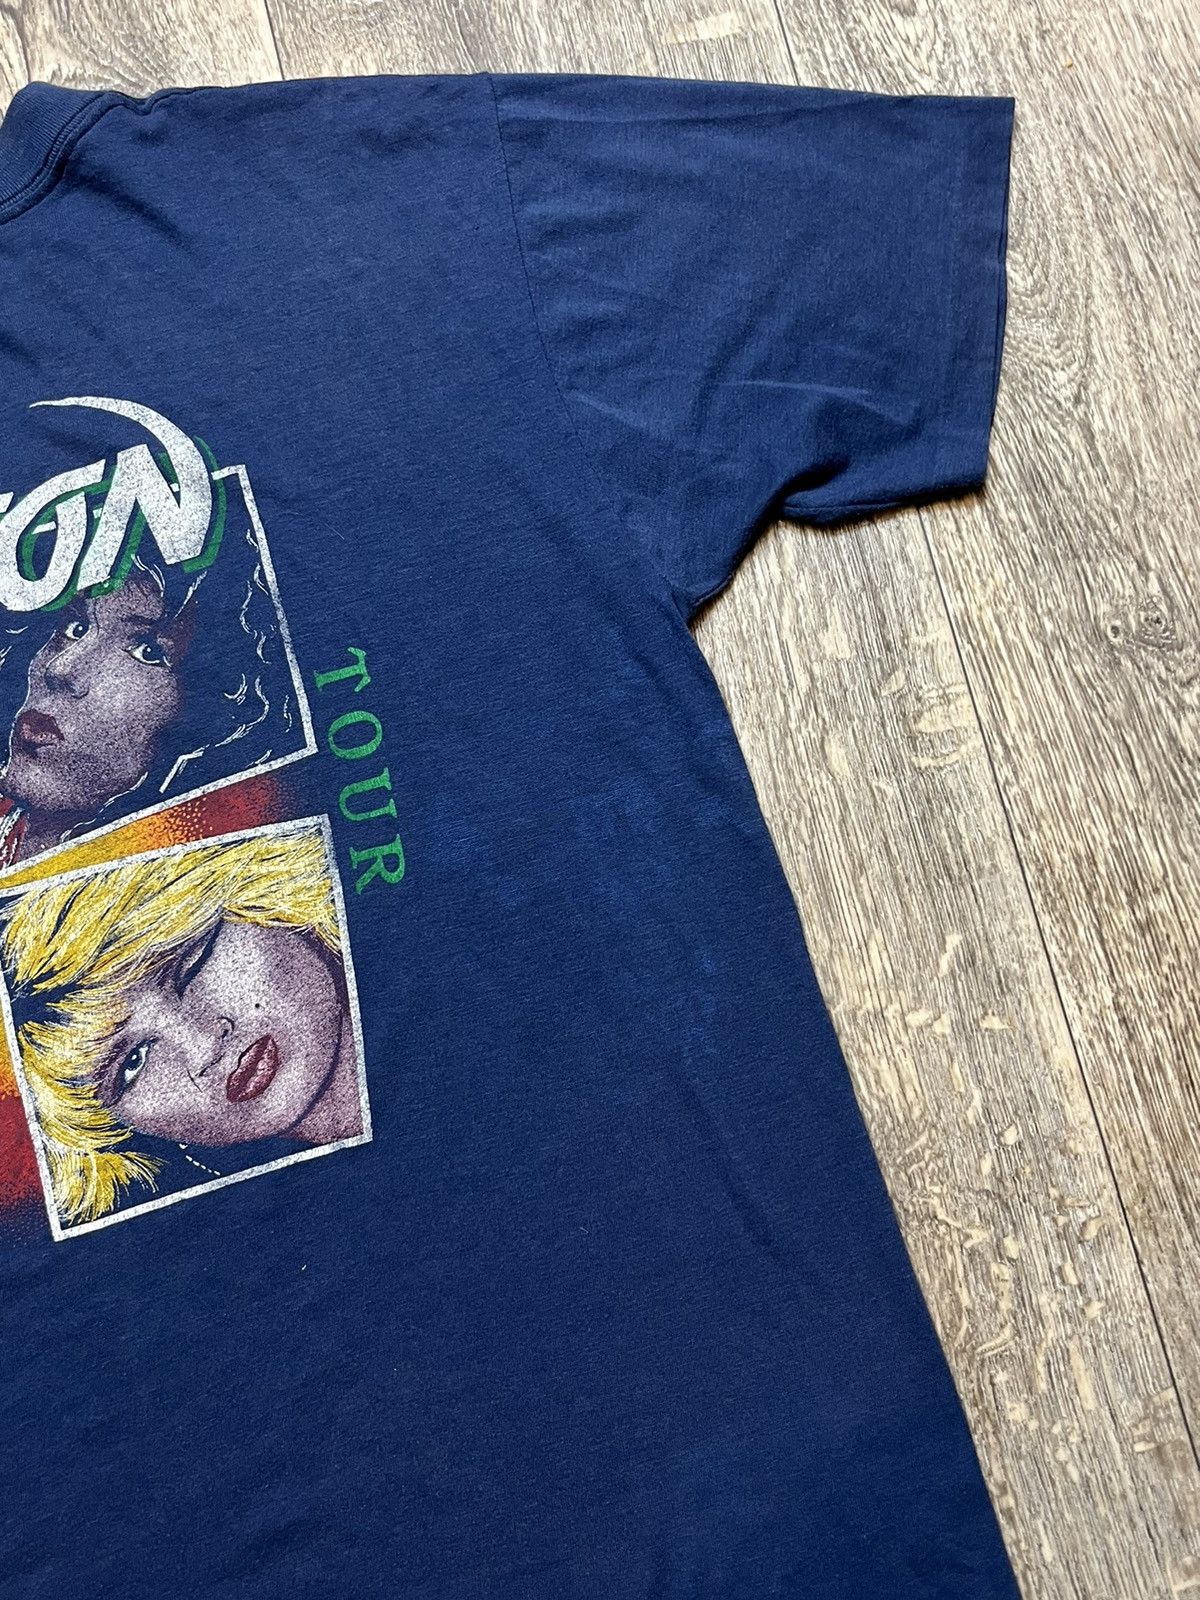 Vintage Vintage Poison concert tour 80-90s t-shirt tee Size XL / US 12-14 / IT 48-50 - 10 Preview